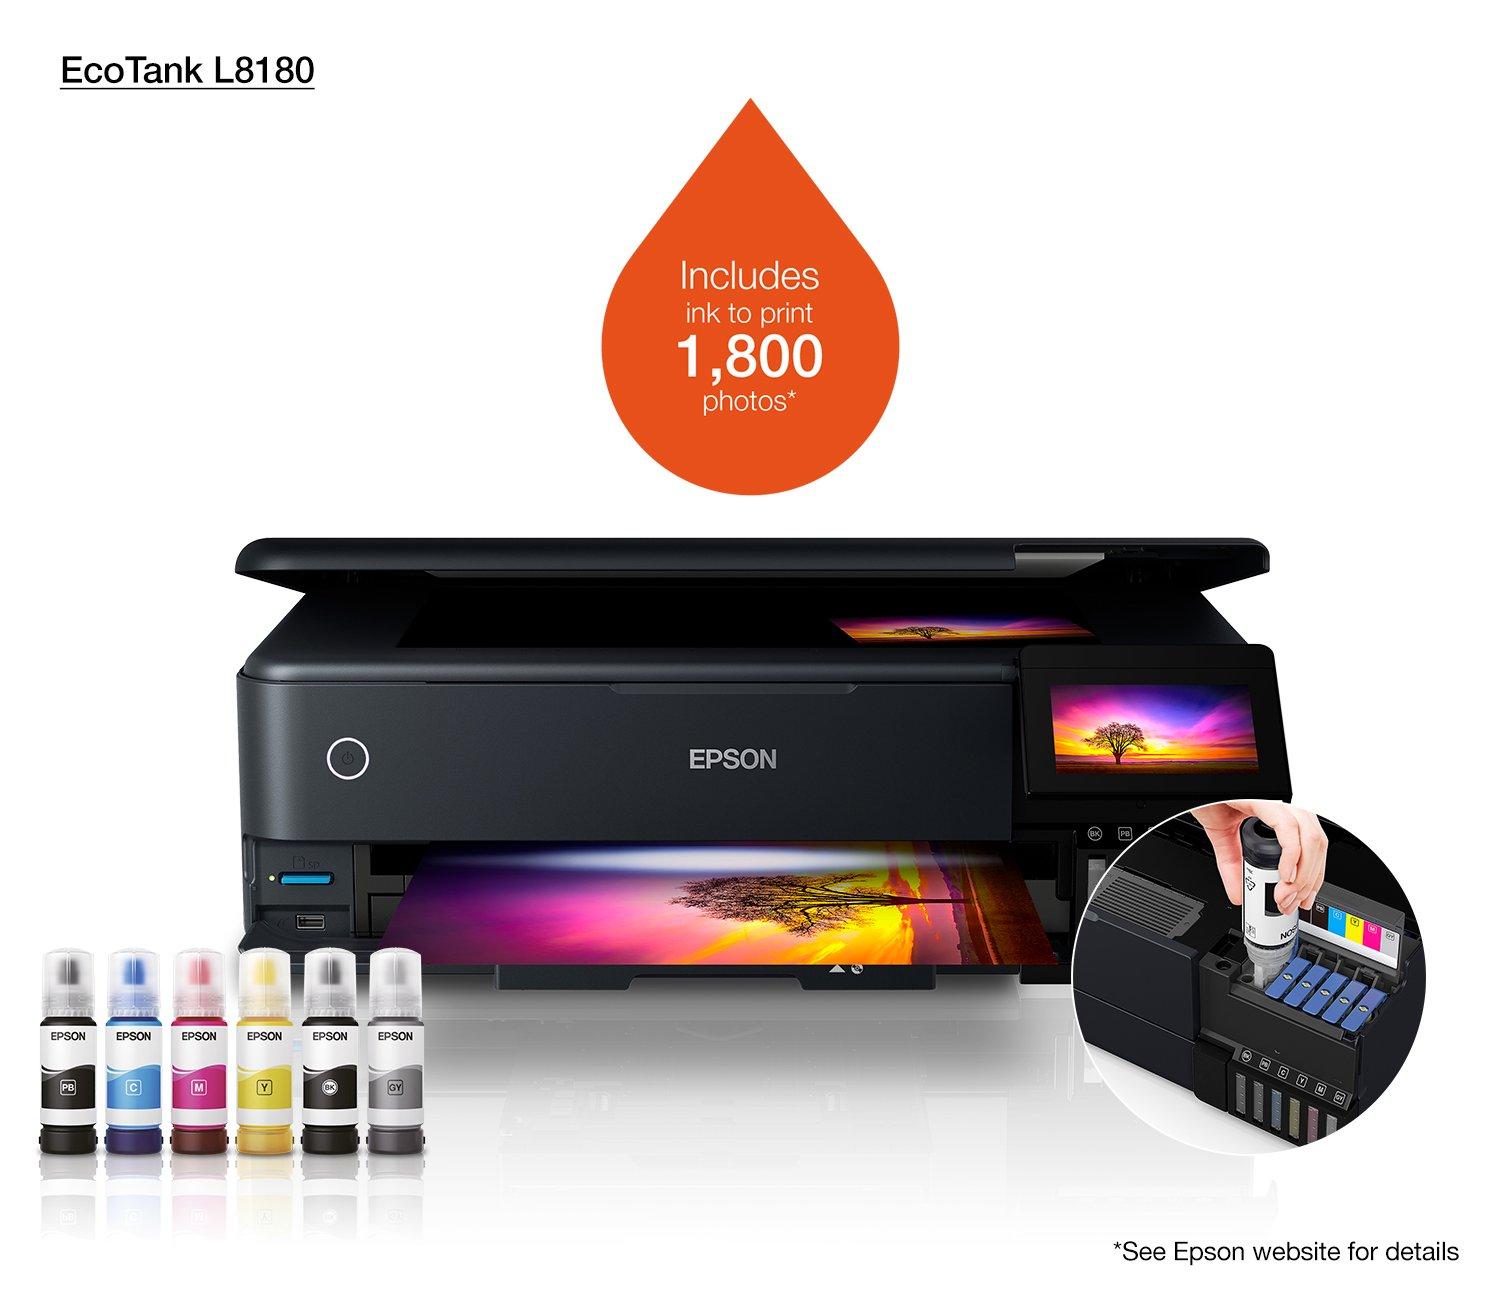 Novocolor, S.A. - ❗ N U E V A ❗ IMPRESORA EPSON L8180 MULTIFUNCIONAL A3  🖨🧾🤩 ¡IMPRIME HASTA A3+! Descubre la nueva tecnología de impresión con 6  colores de tinta (CMYK 